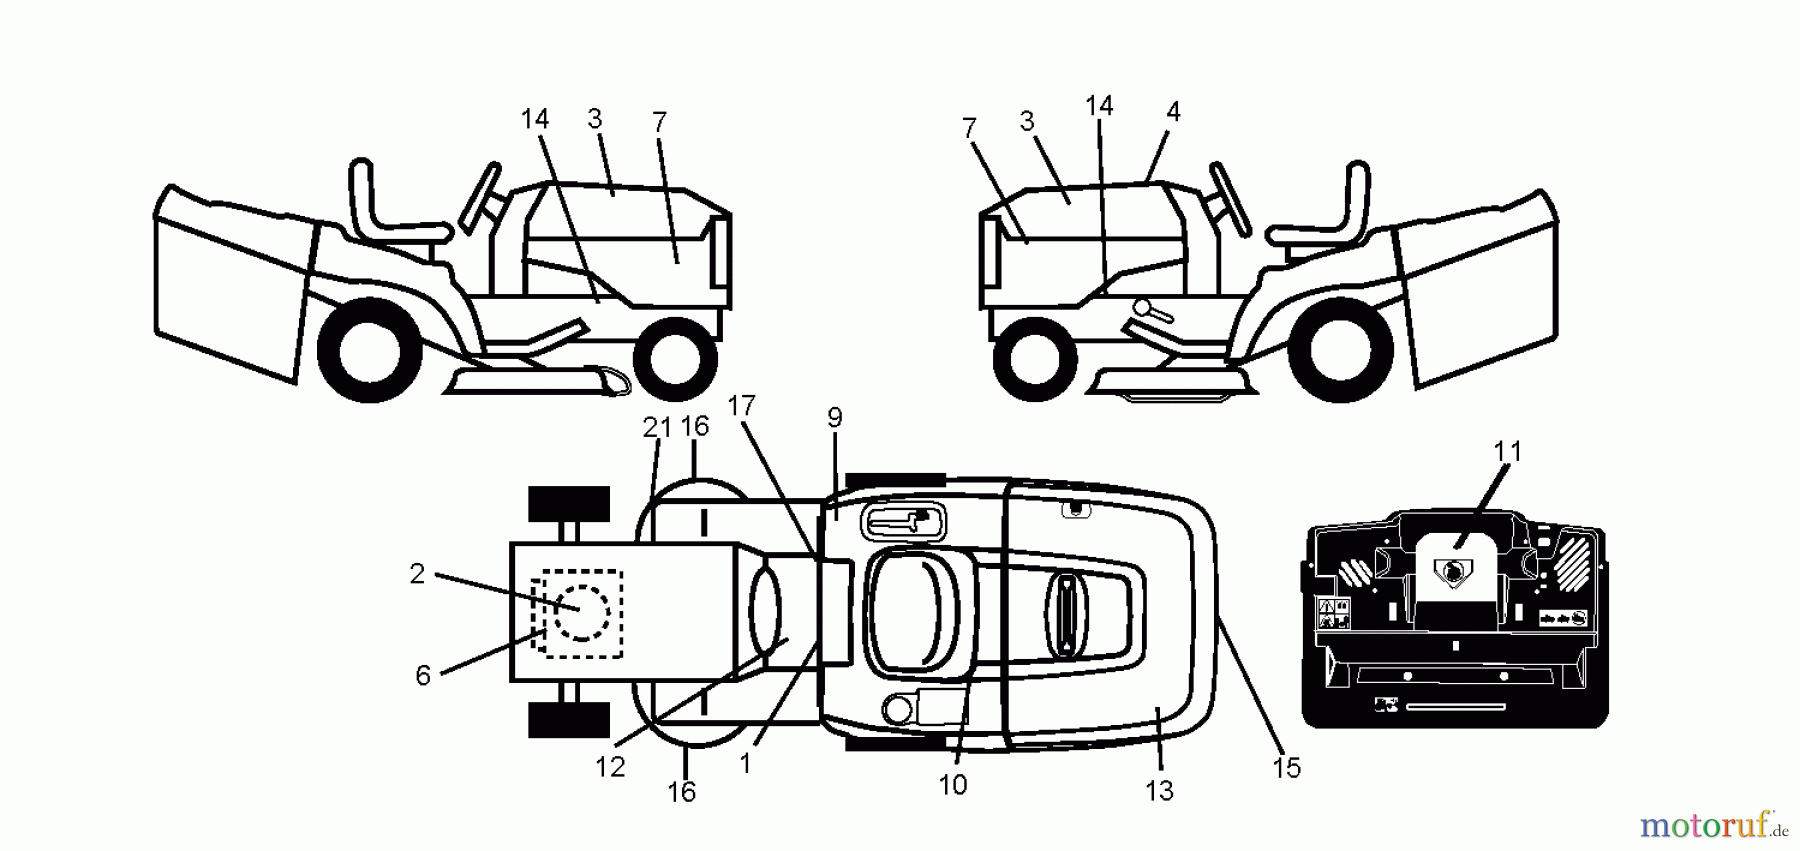  Jonsered Rasen  und Garten Traktoren LT2113 CM (96061022404) - Jonsered Lawn & Garden Tractor (2010-03) DECALS